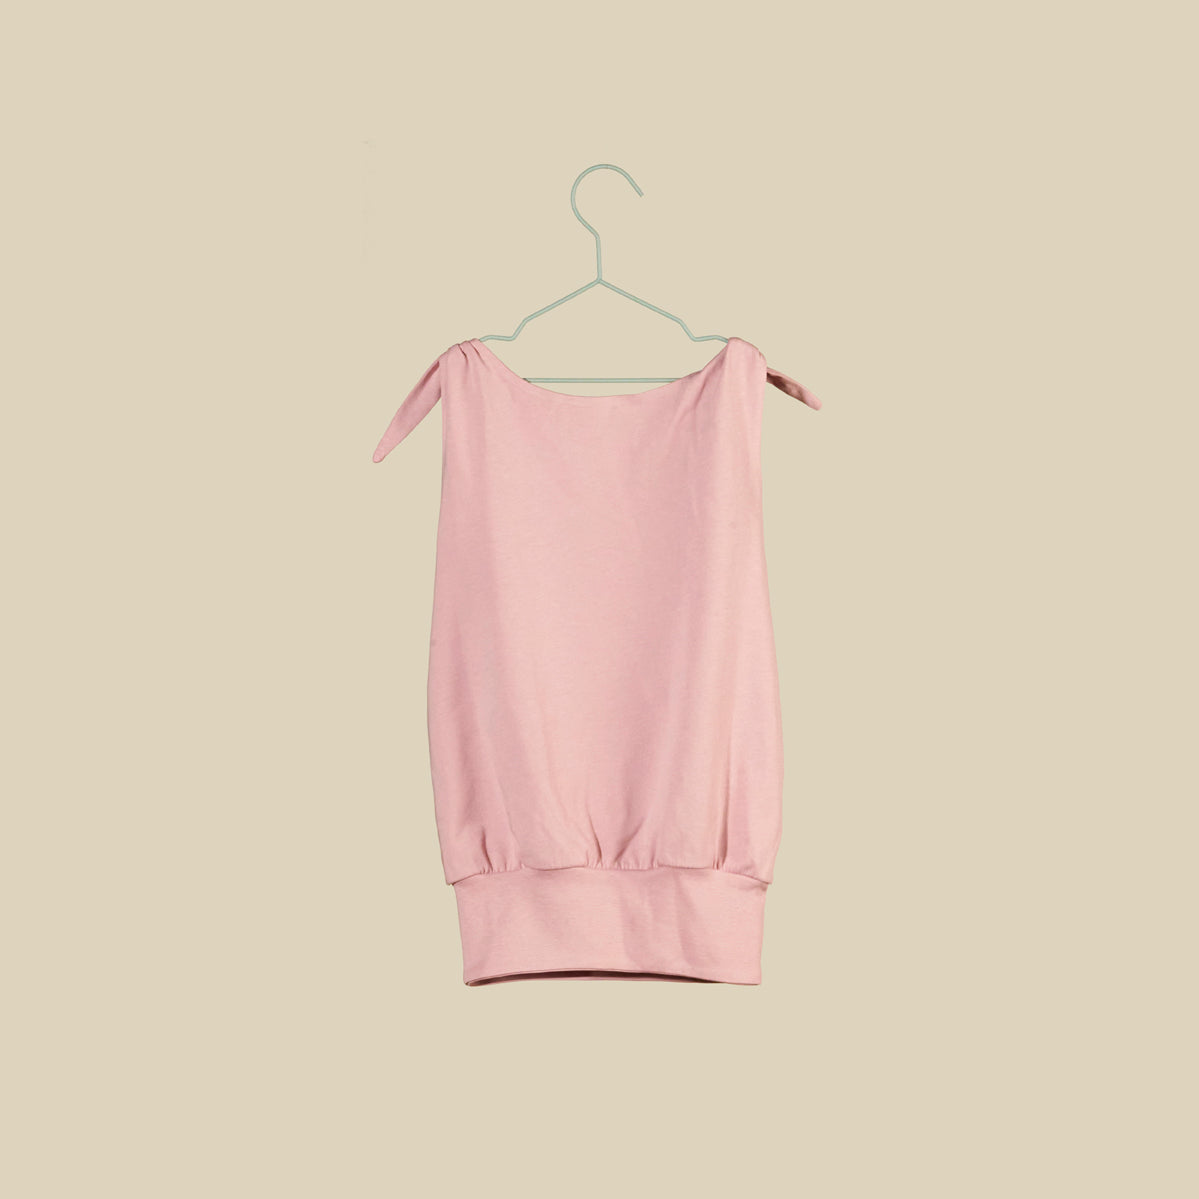 Top o mini abito rosa chiaro senza maniche con nodi